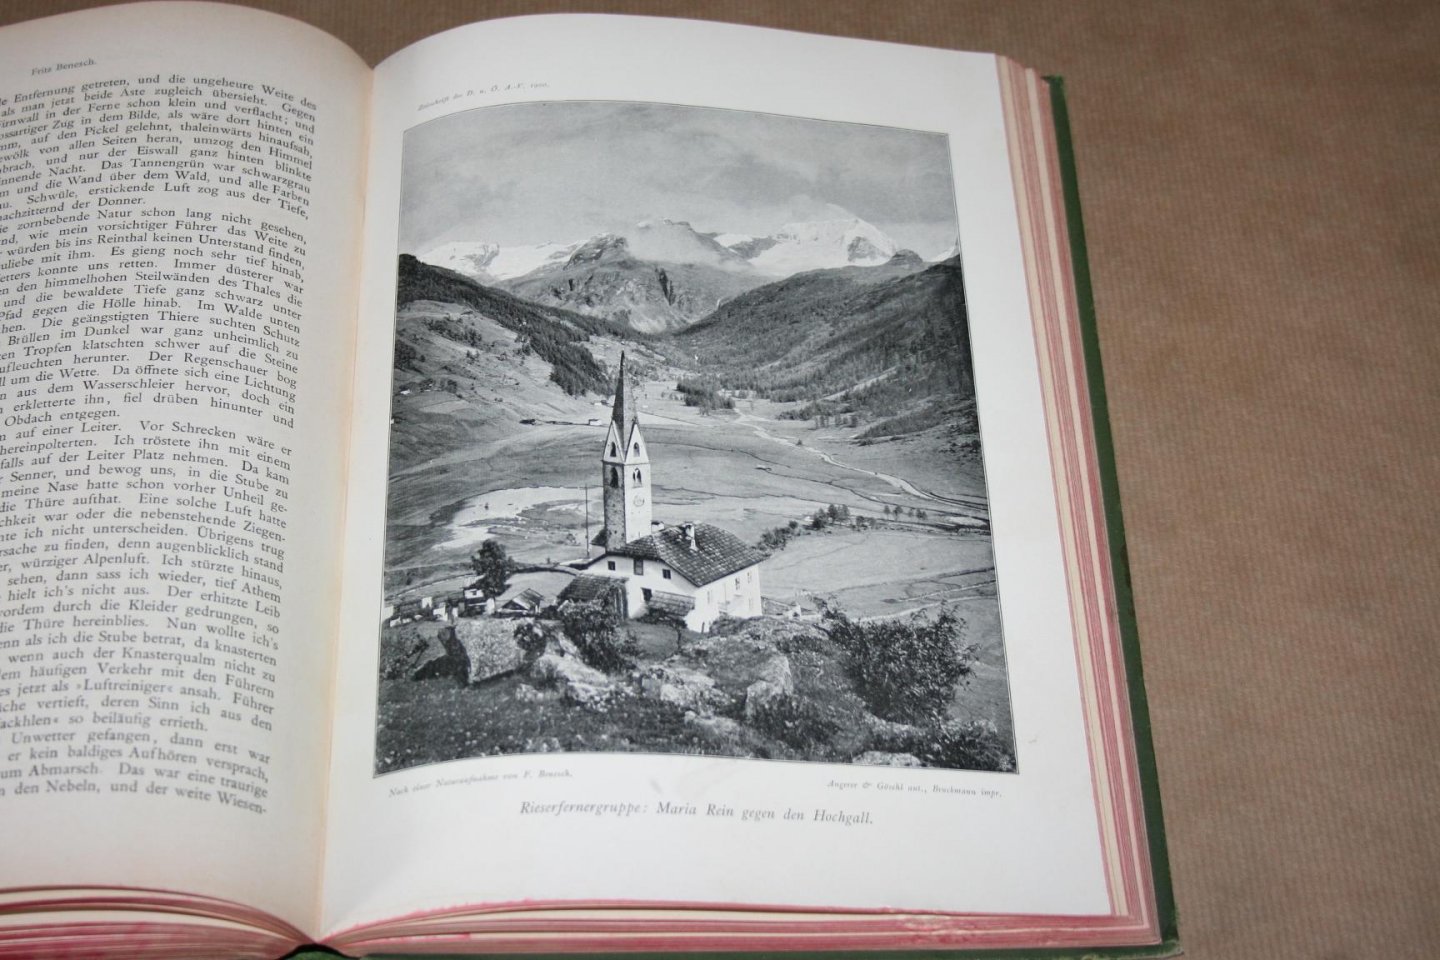  - Zeitschrift des Deutschen und Õstereichischen Alpenvereins - 1900